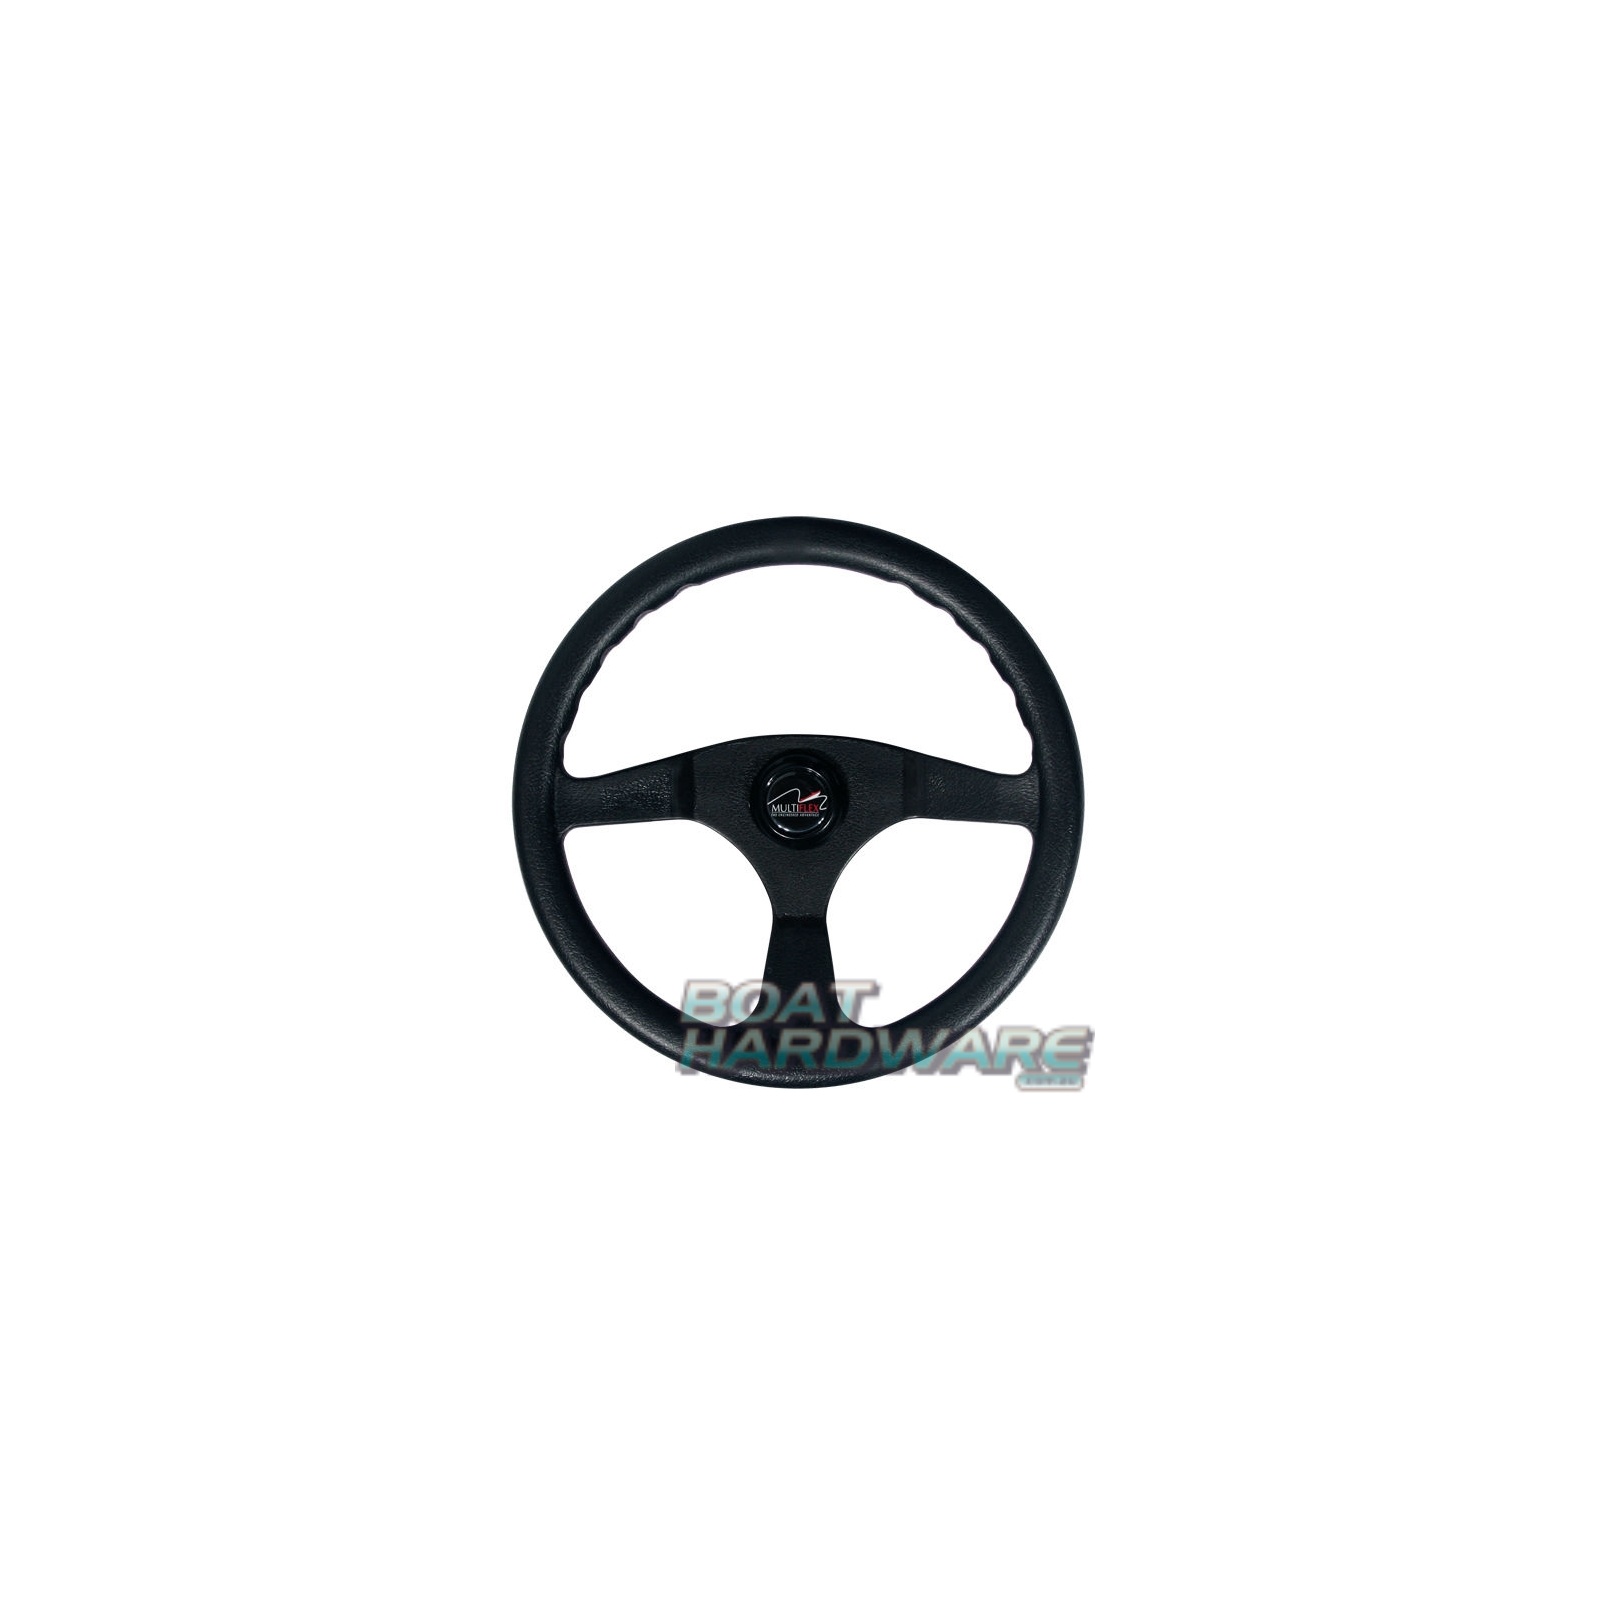 Sports Steering Wheel - Alpha 3 Spoke 340mm